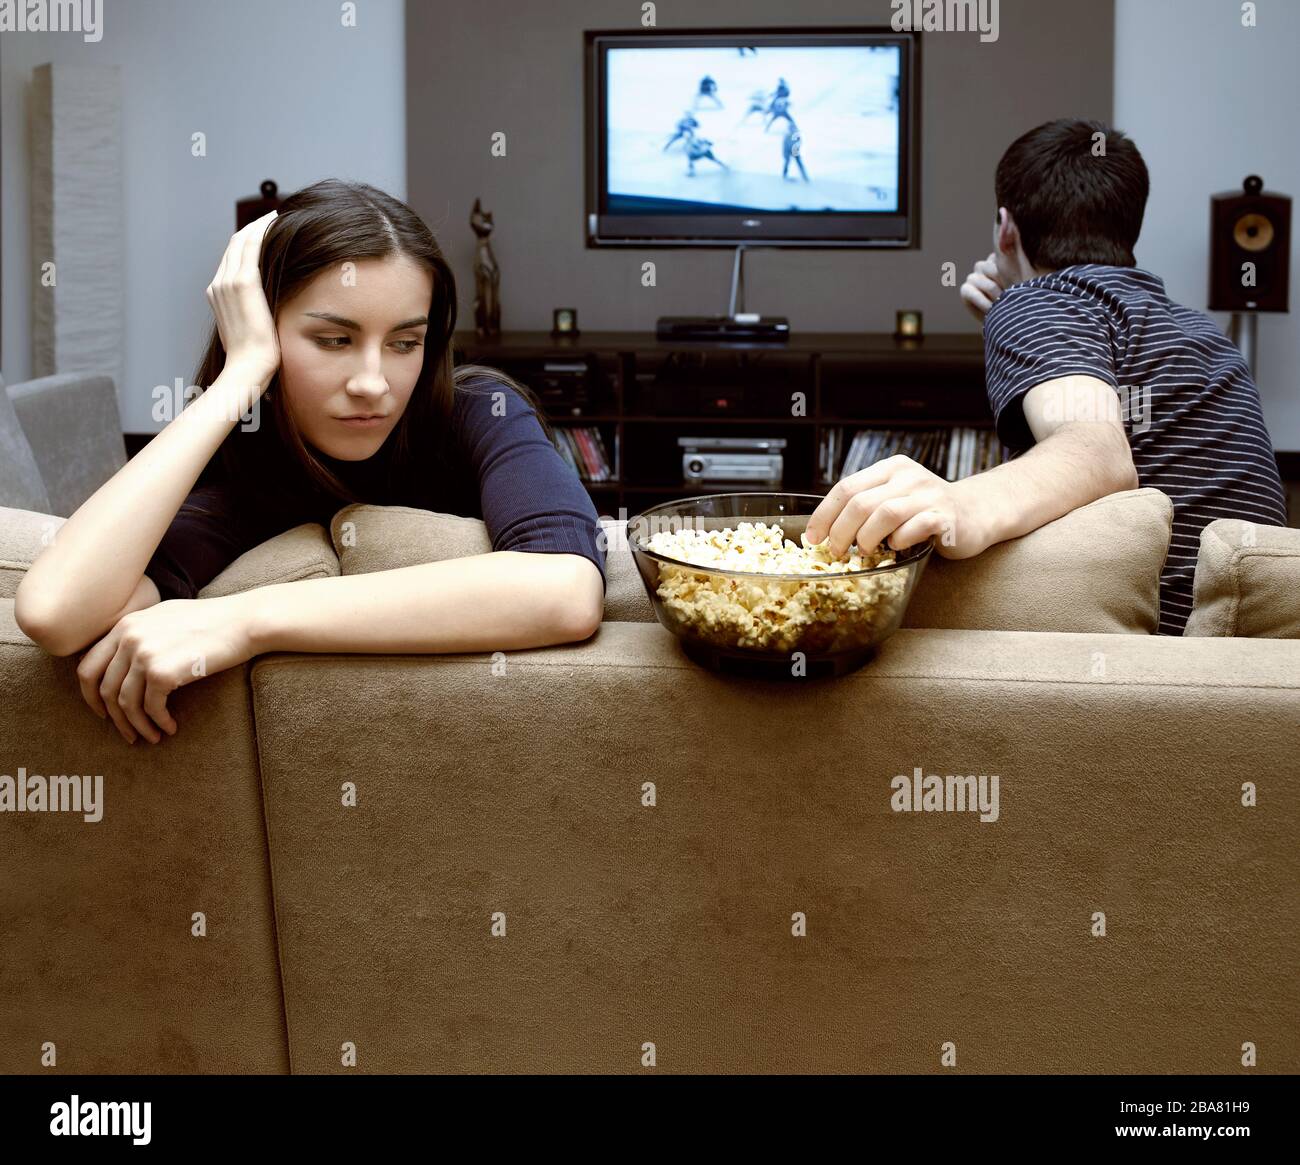 Auto-isolement dans une maison de quarantaine d'un jeune couple pendant une pandémie de coronavirus. Un homme et une fille regardent la télévision. Banque D'Images